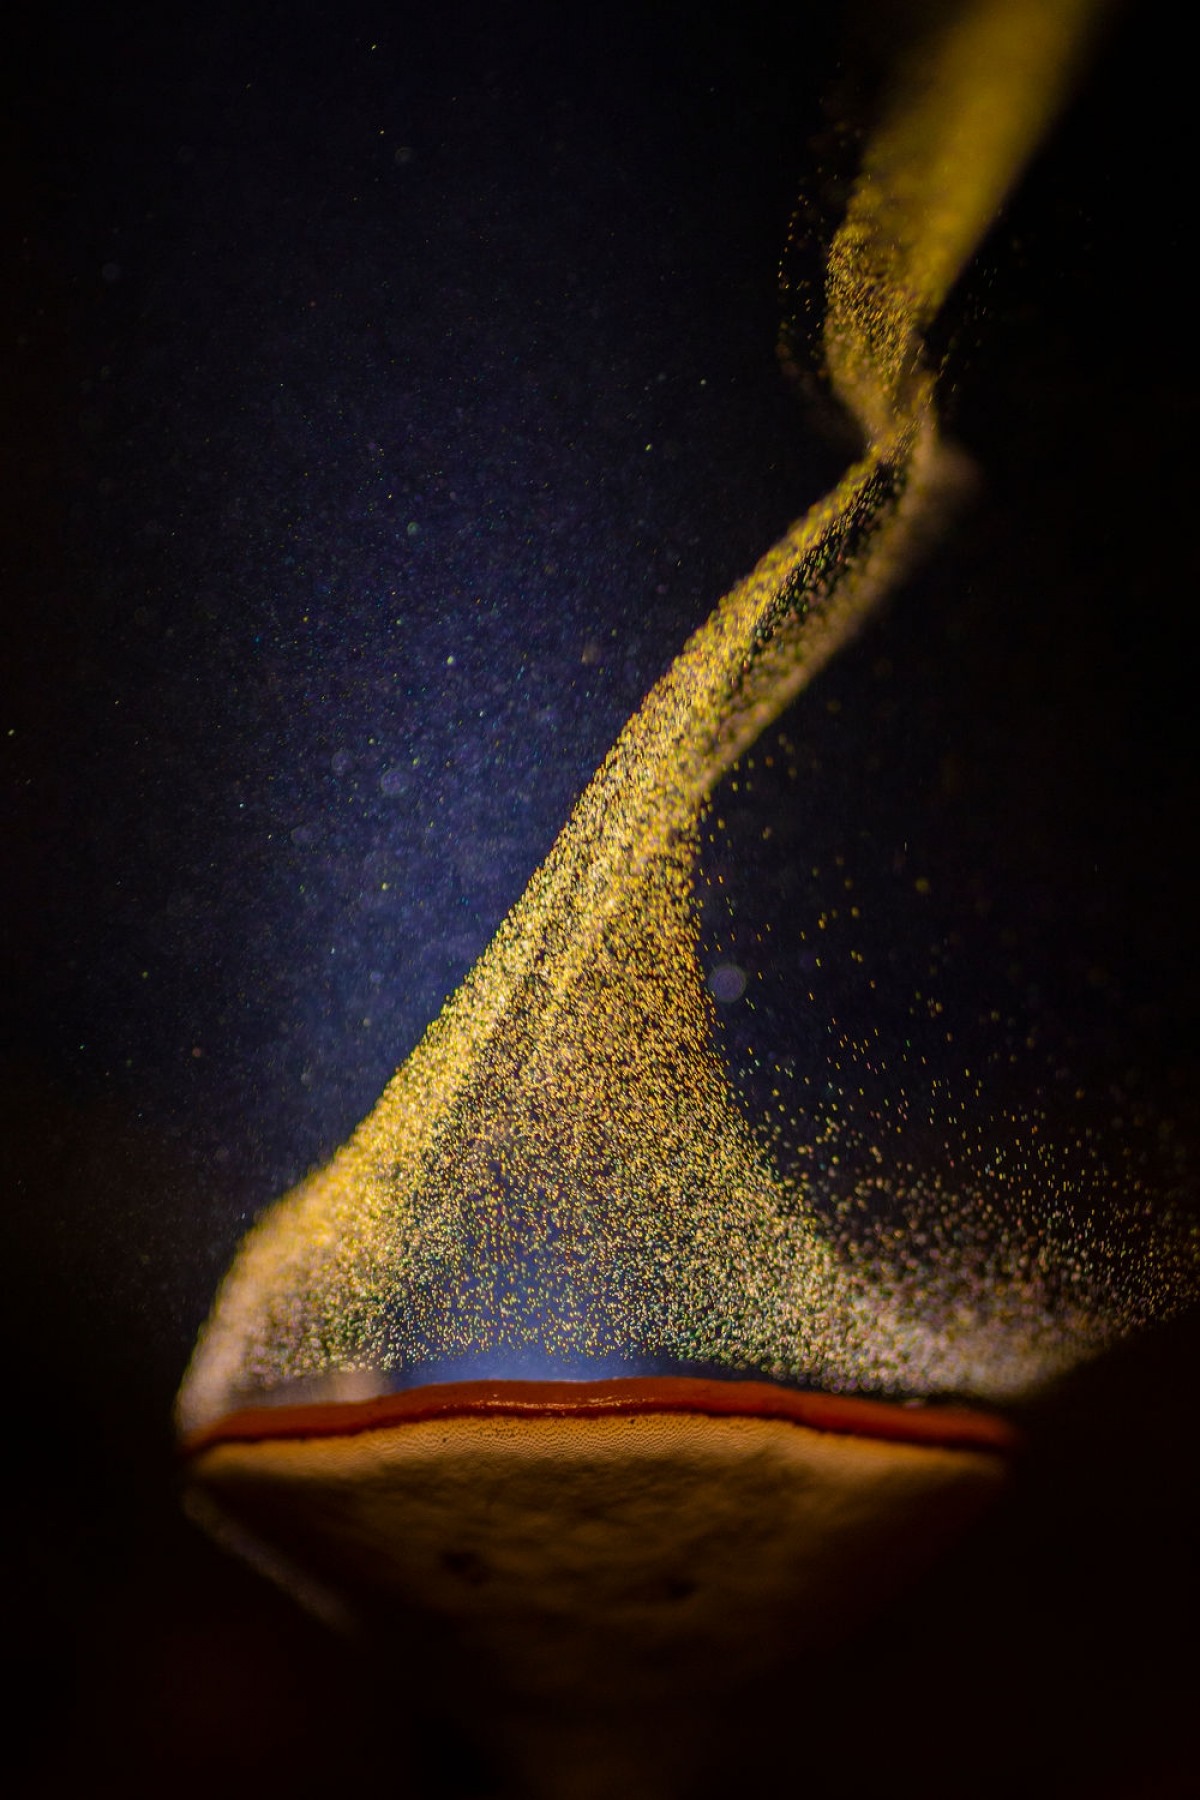 Bức ảnh “Chiếc Cốc lửa” của tác giả Sarang Naik chụp tại Toplepada, Ấn Độ cho thấy khoảnh khắc độc đáo khi một cây nấm đang phát tán bào tử dưới ánh đèn.